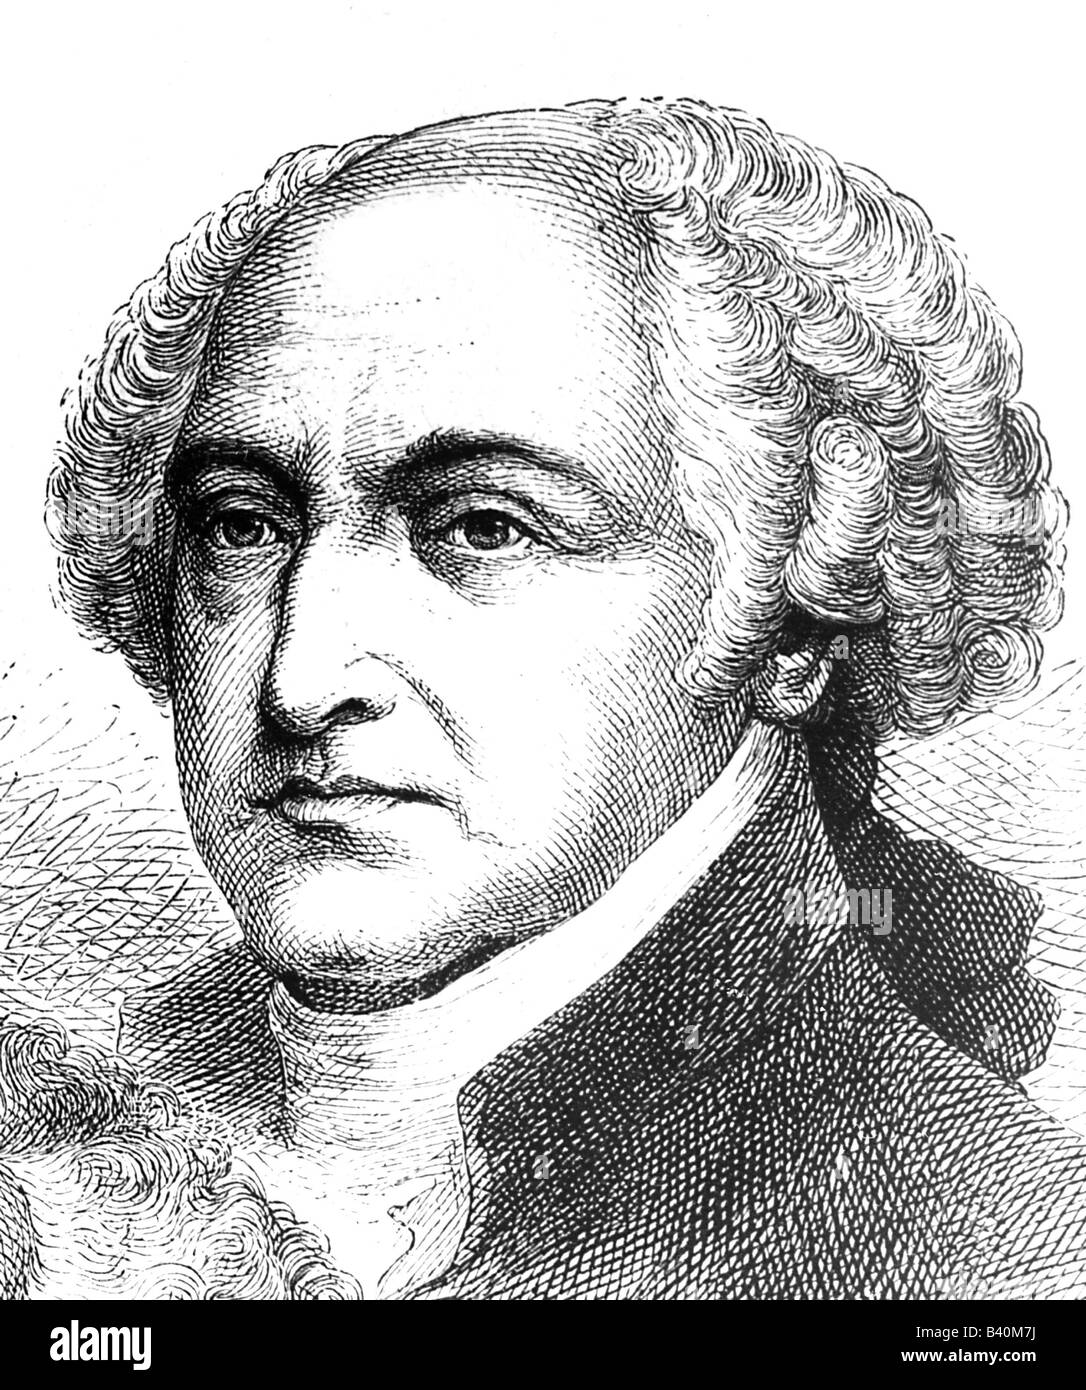 Adams, John, 19.10.1735 - 4.7.1826, US-amerikanischer Politiker (Föderalist), zweiter präsident der Vereinigten Staaten von Amerika von 1796 - 1801, Porträt, Holzgravur, 19. Jahrhundert, Stockfoto